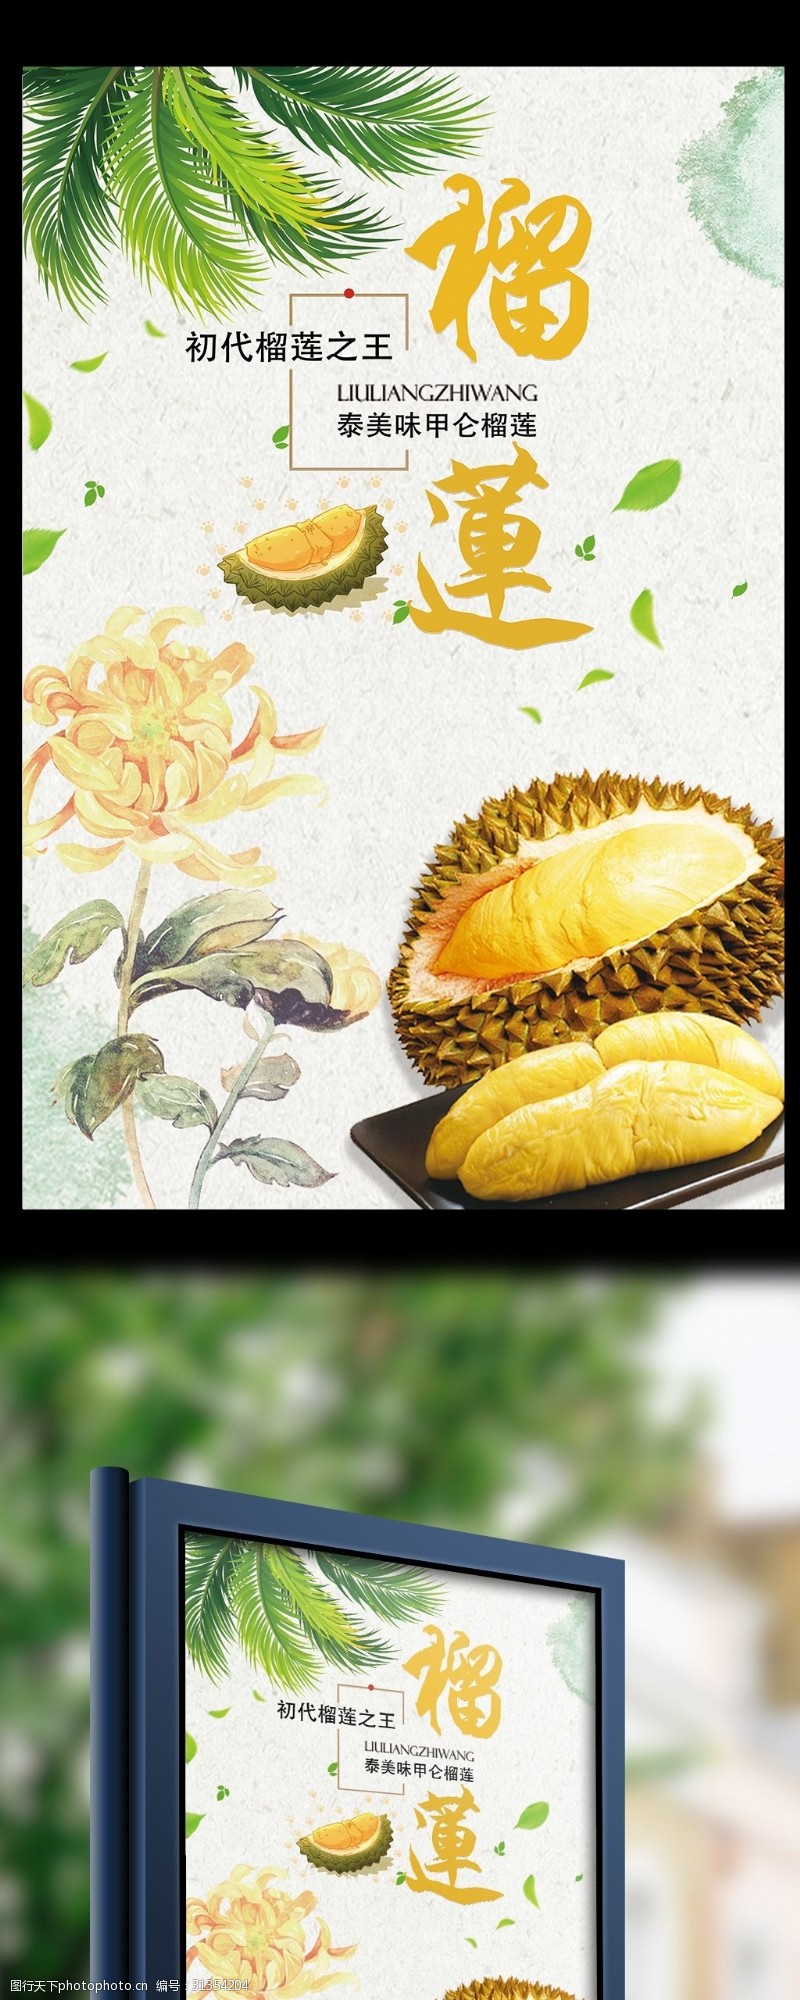 泰国榴莲美食海报简约创意泰式榴莲美食宣传海报